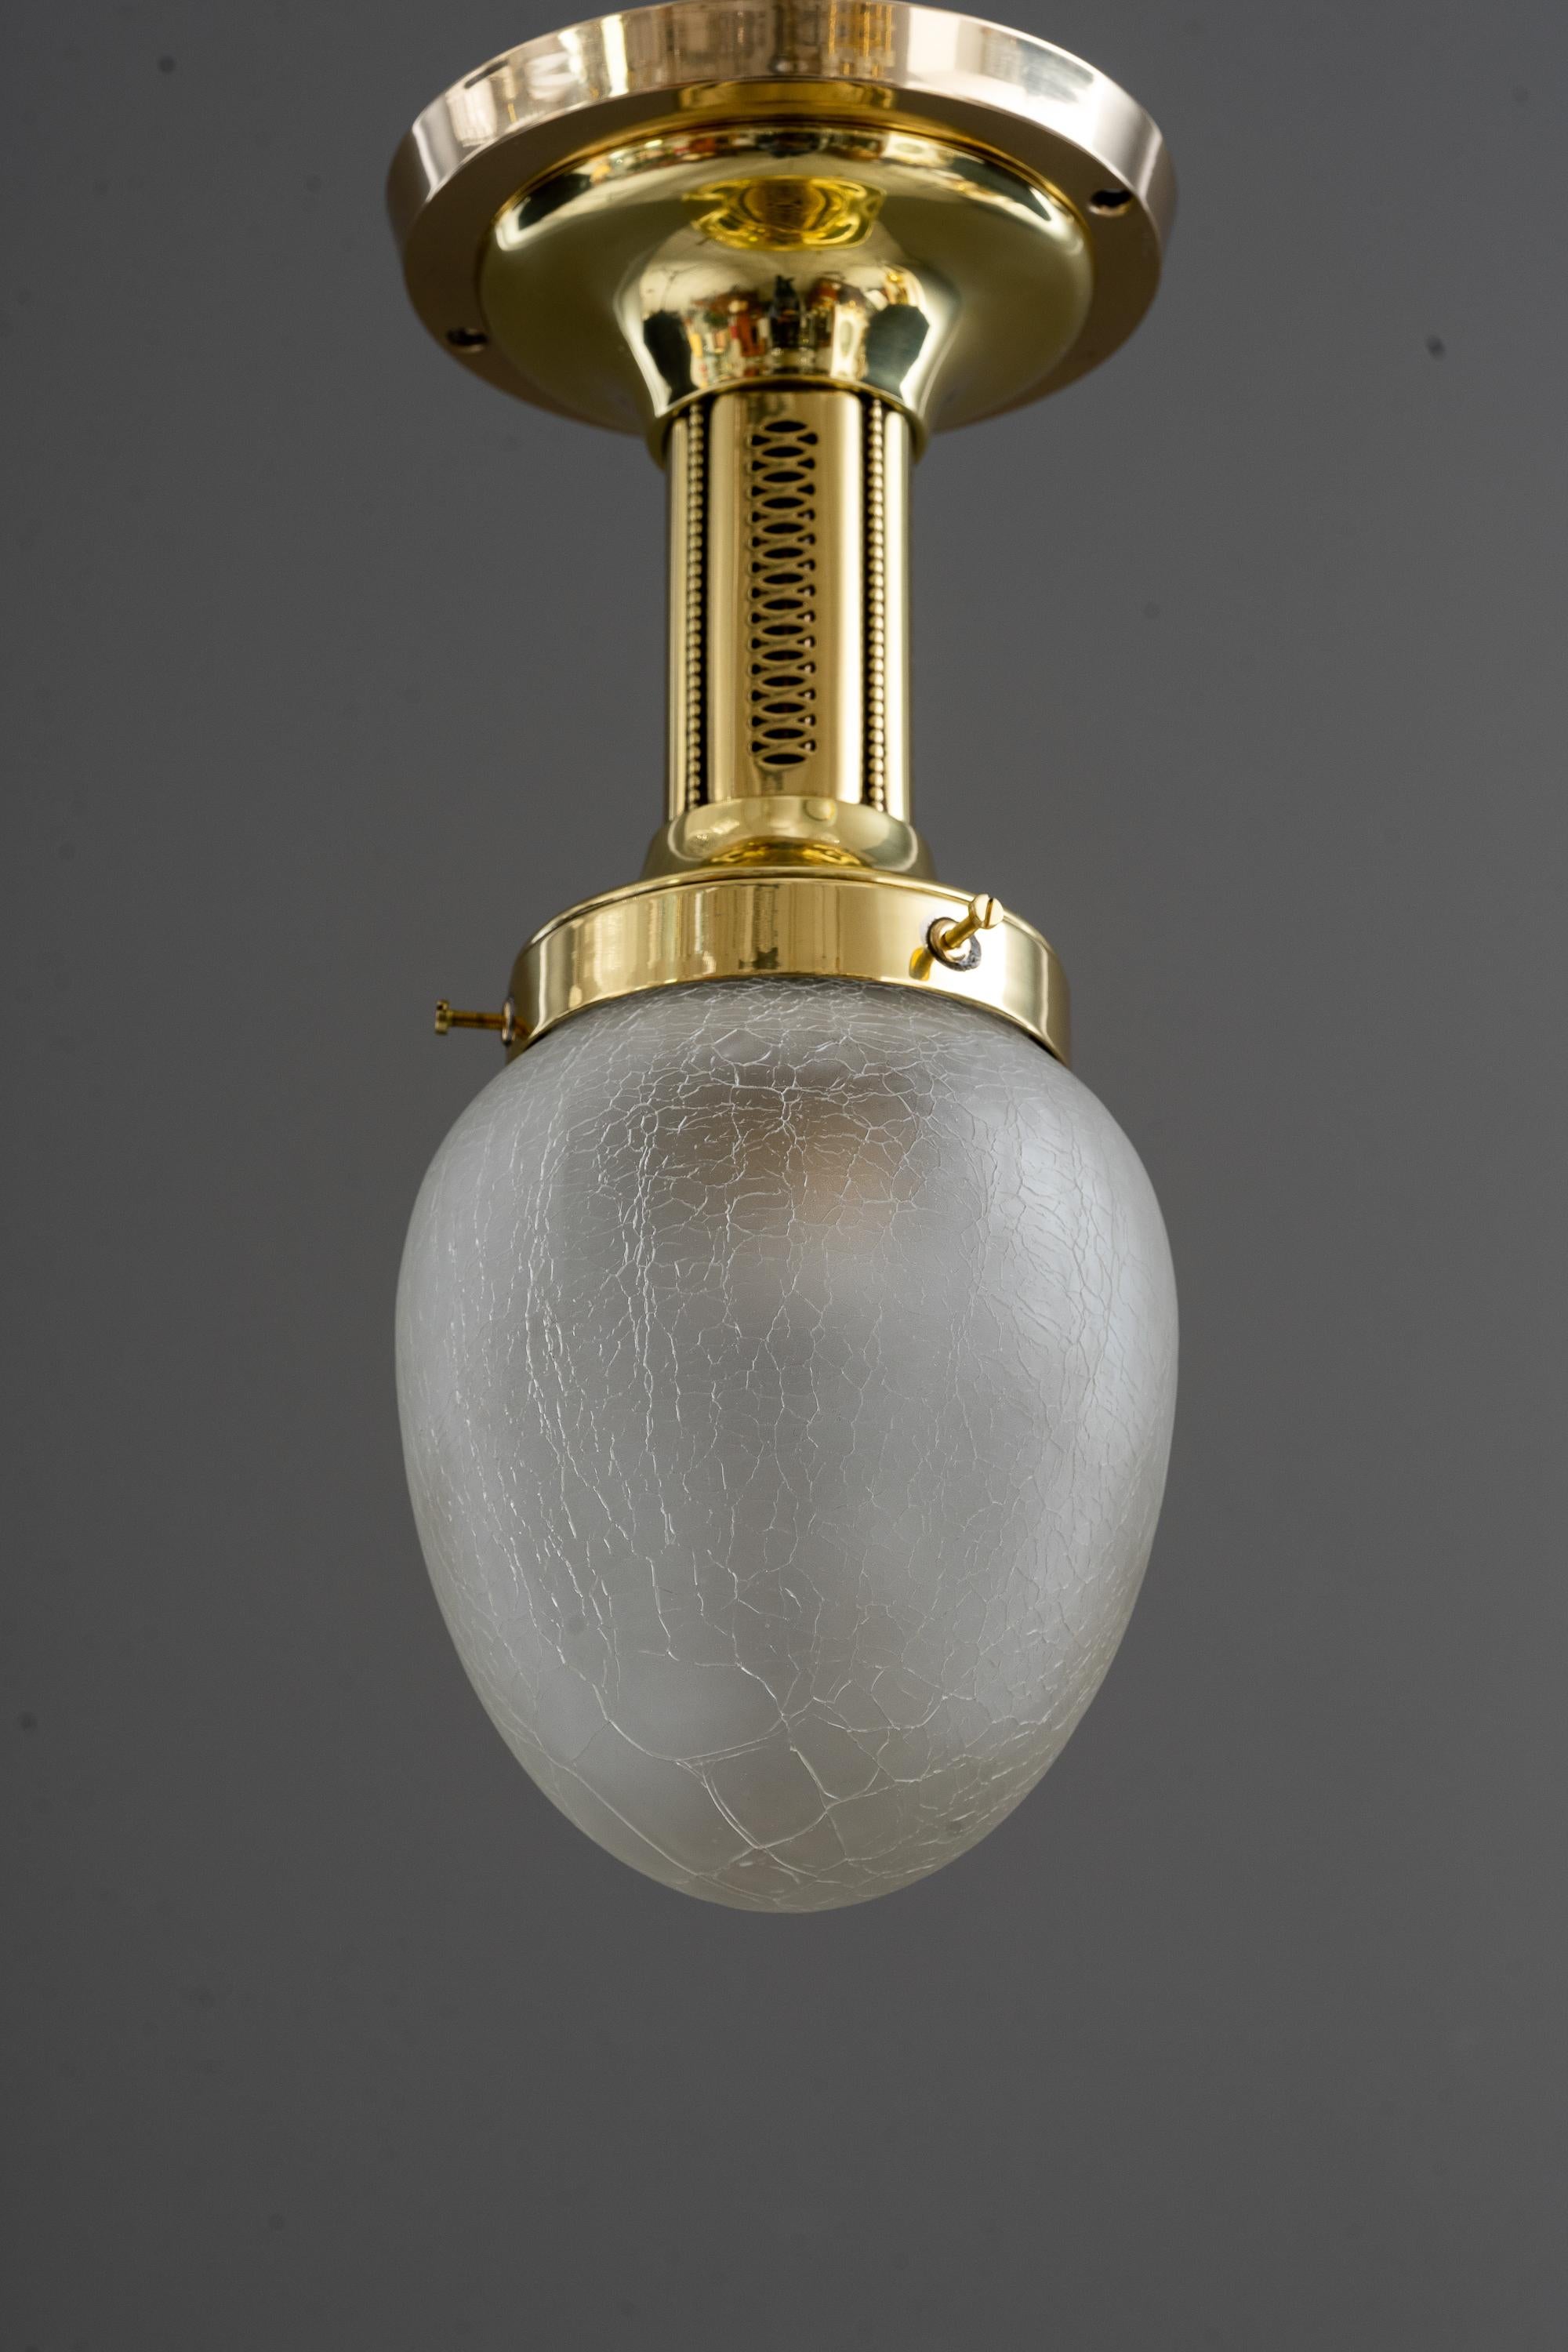 Art Deco Deckenlampe mit originalem Glasschirm um 1920
Poliert und einbrennlackiert
Original Glasschirm.